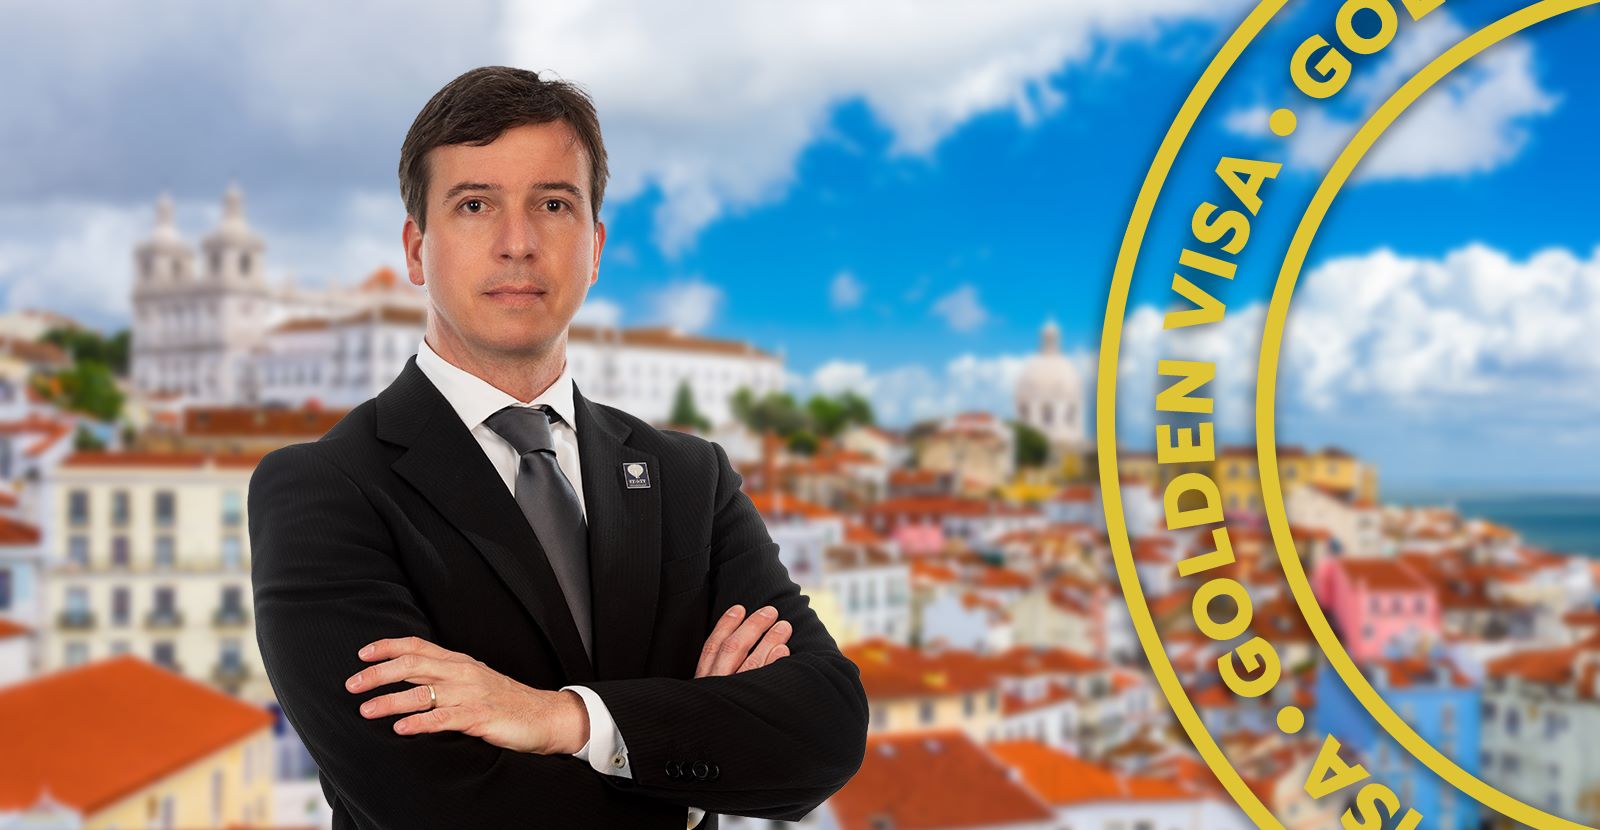 Aproveite a oportunidade única do Golden Visa de Portugal!